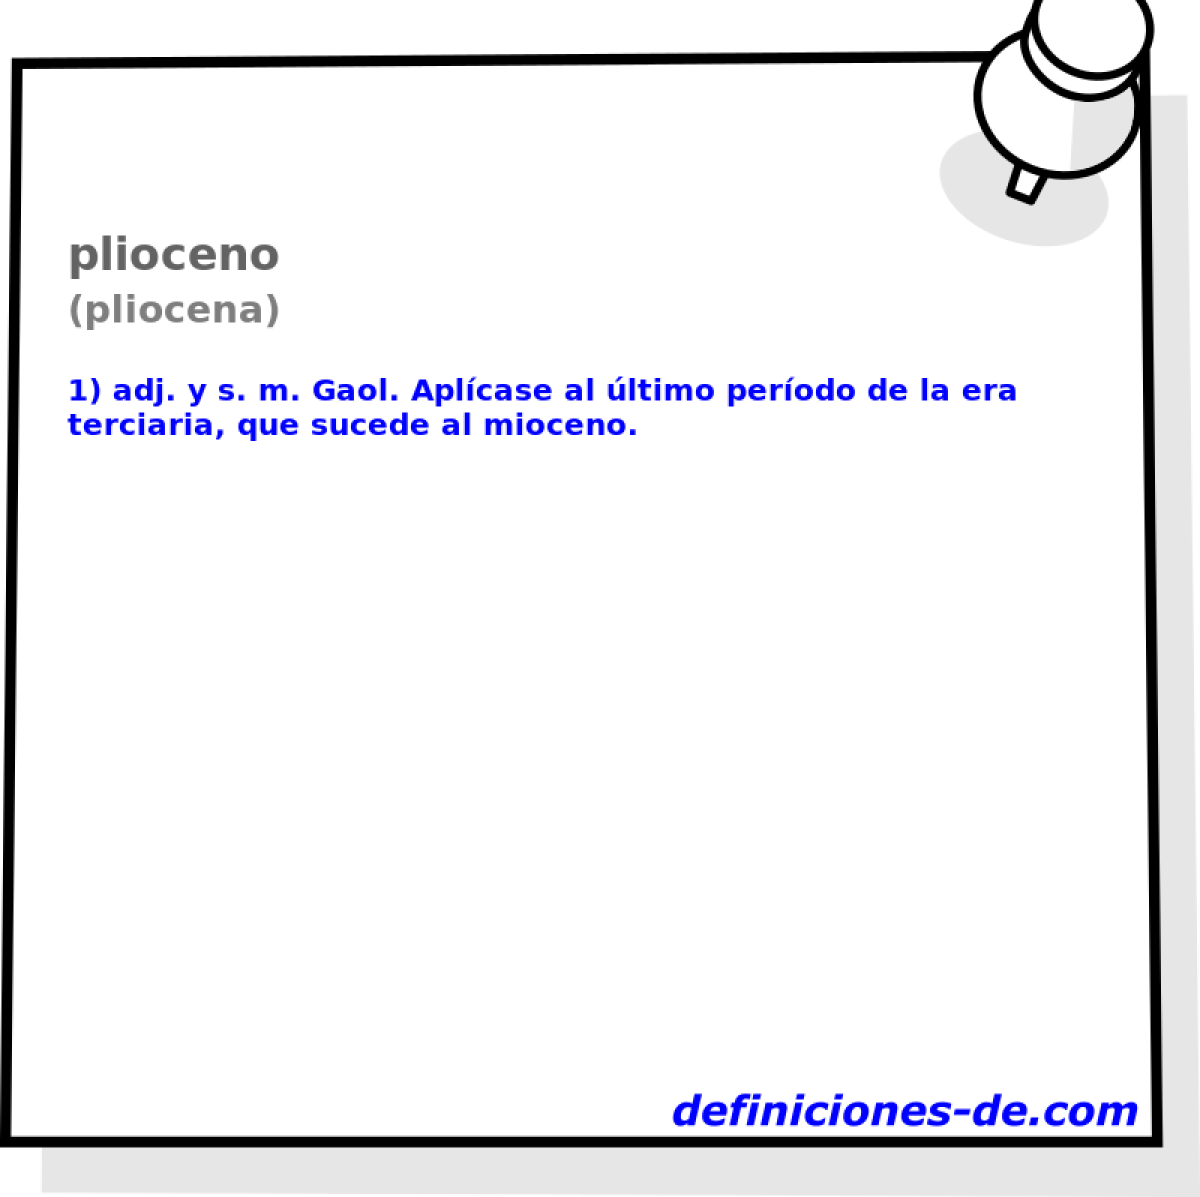 plioceno (pliocena)